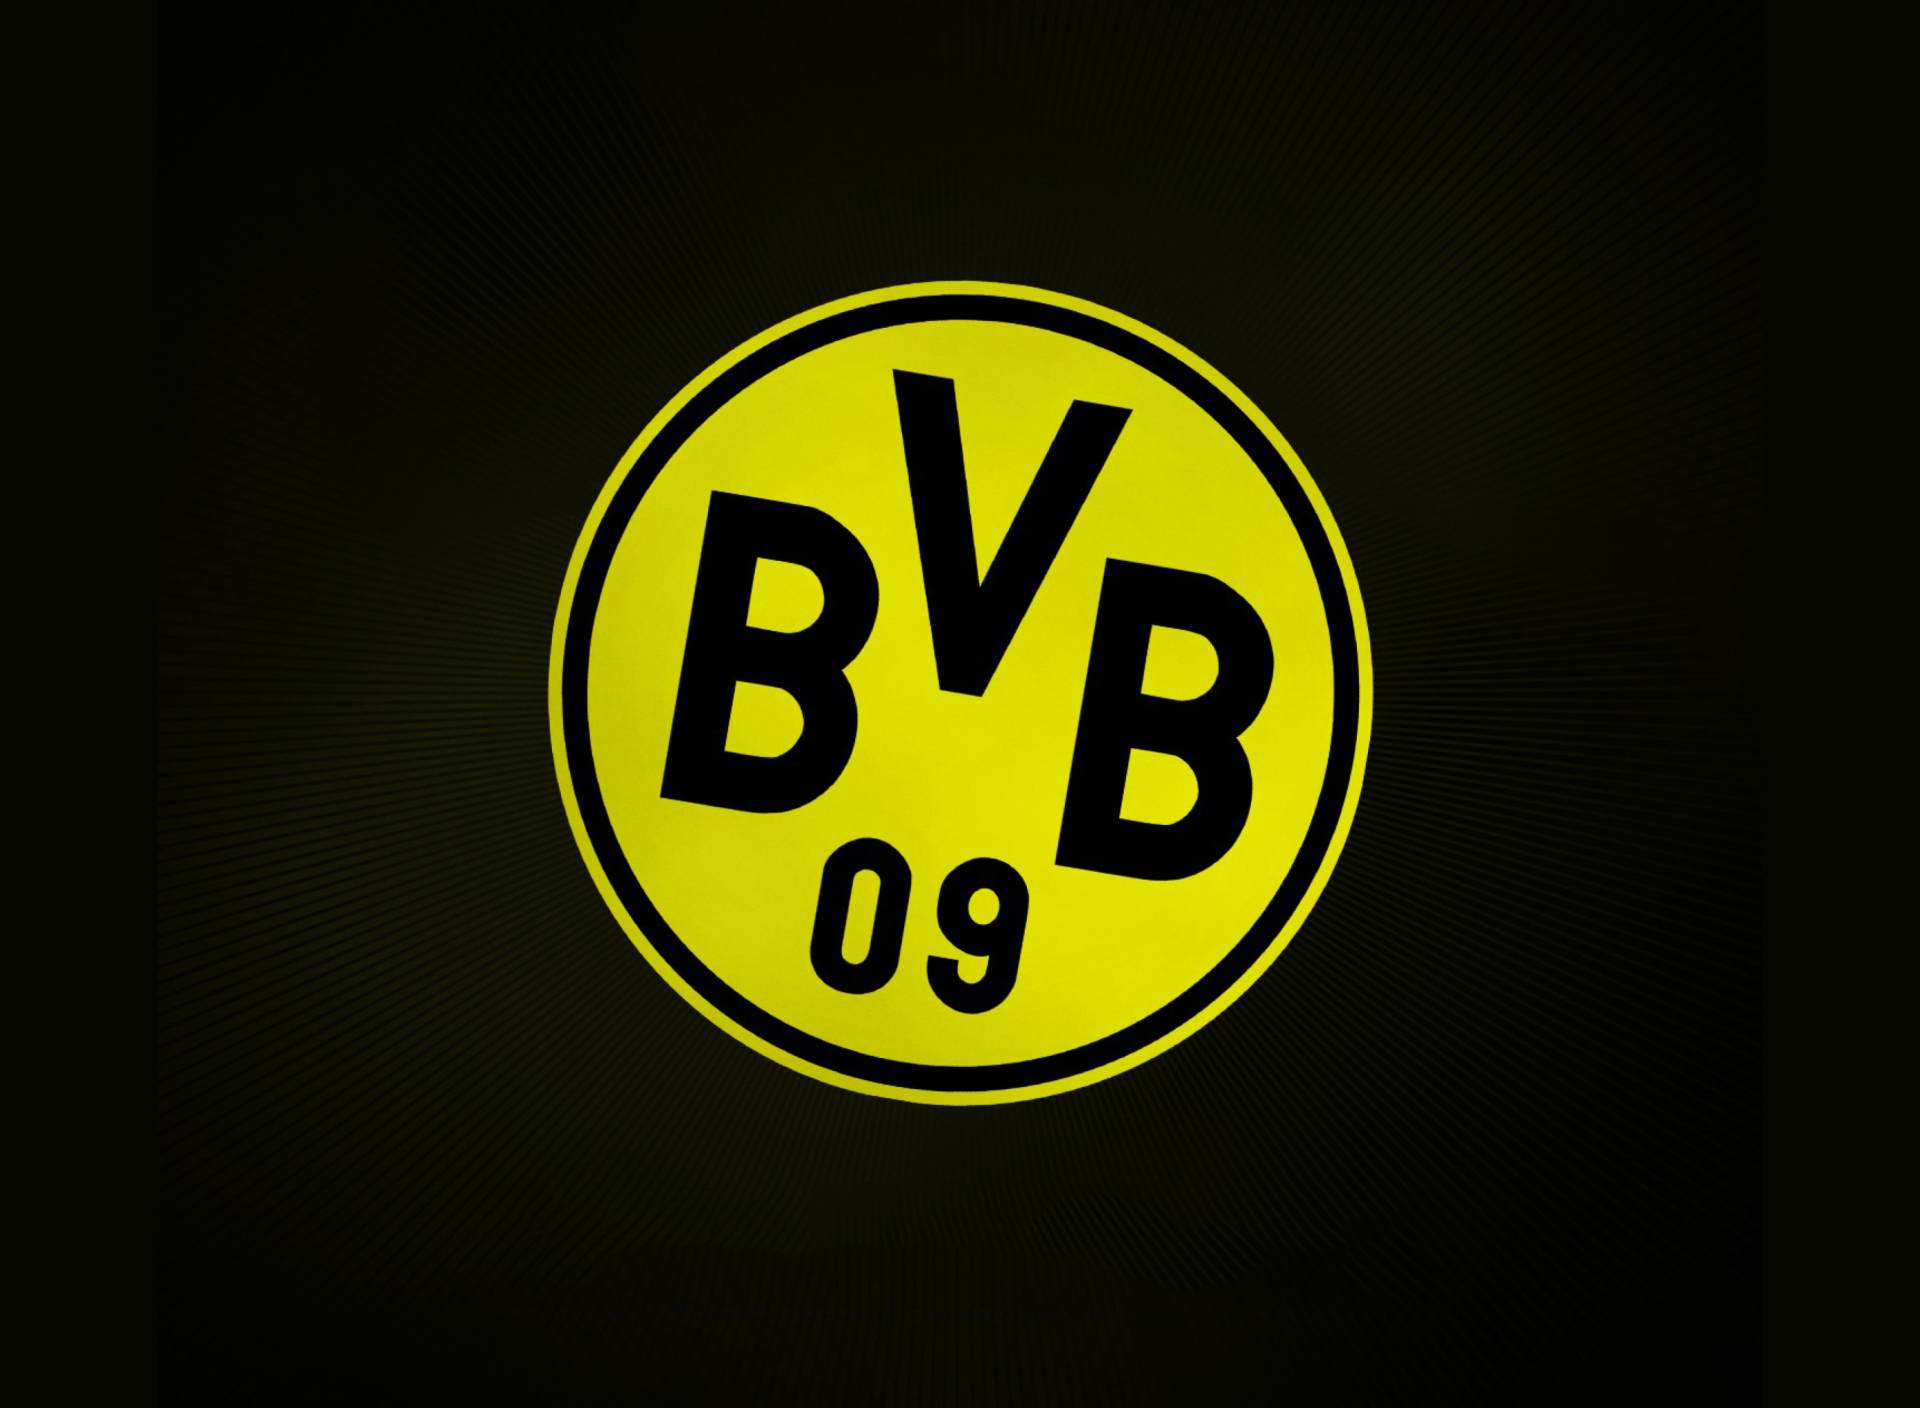 Borussia Dortmund - BVB wallpaper 1920x1408